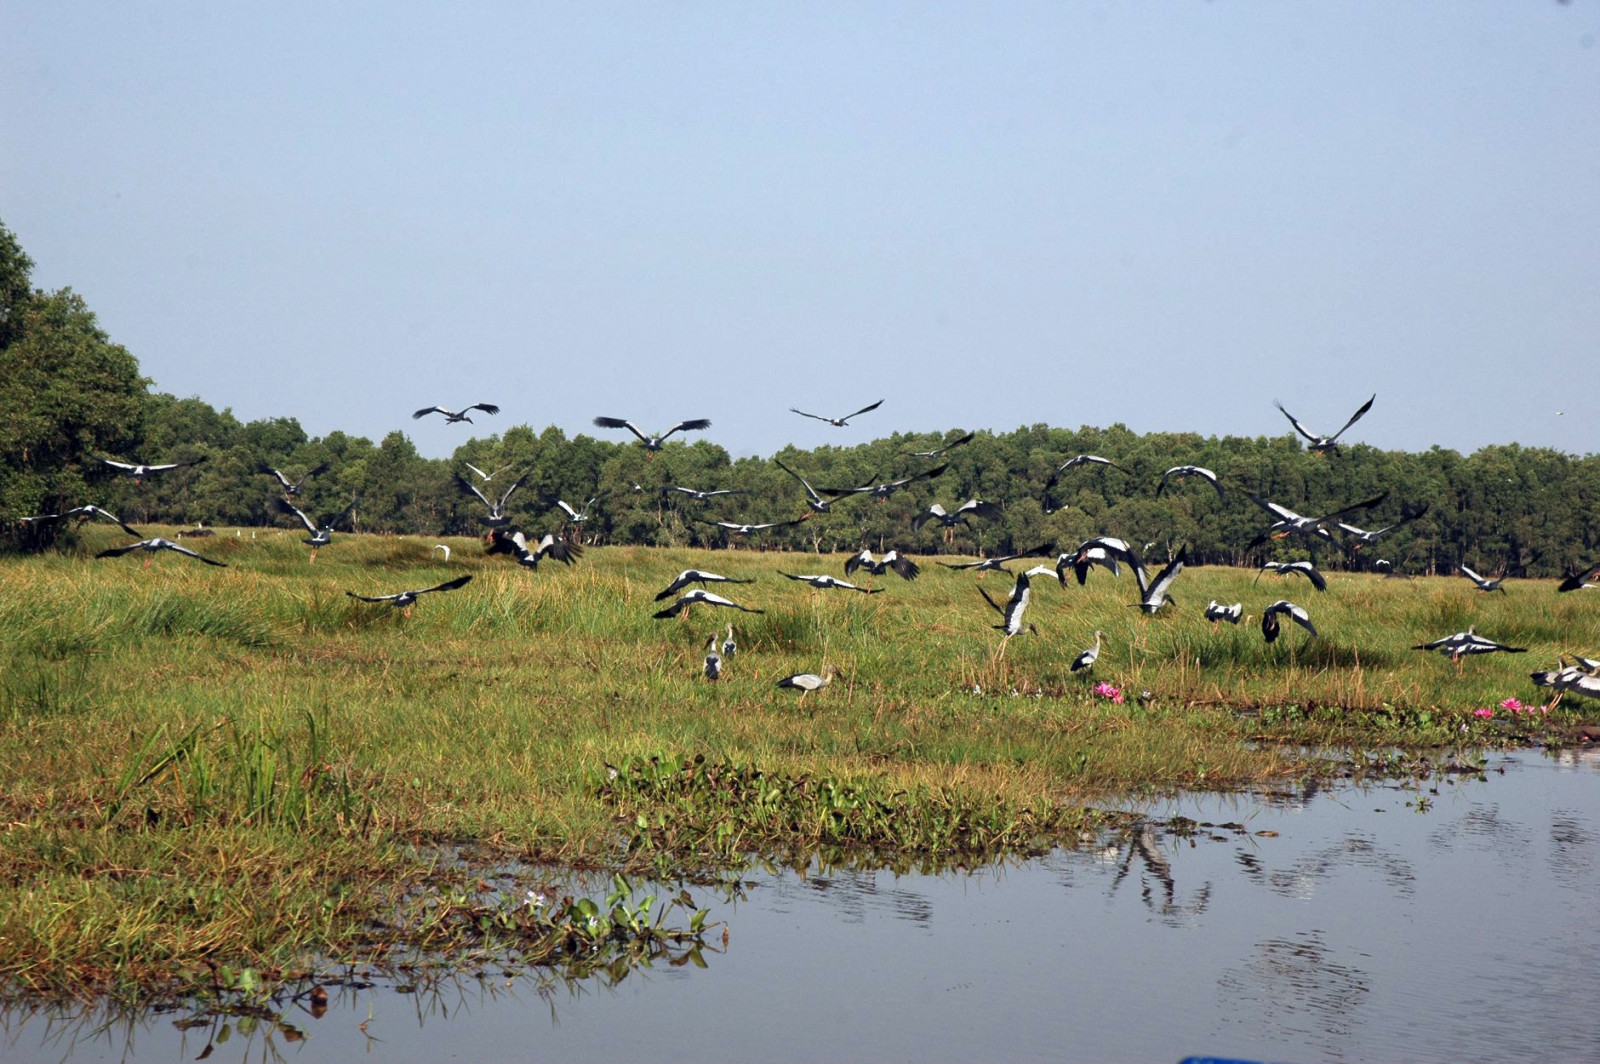 Cấp bách bảo tồn các loài chim hoang dã, di cư tại Việt Nam